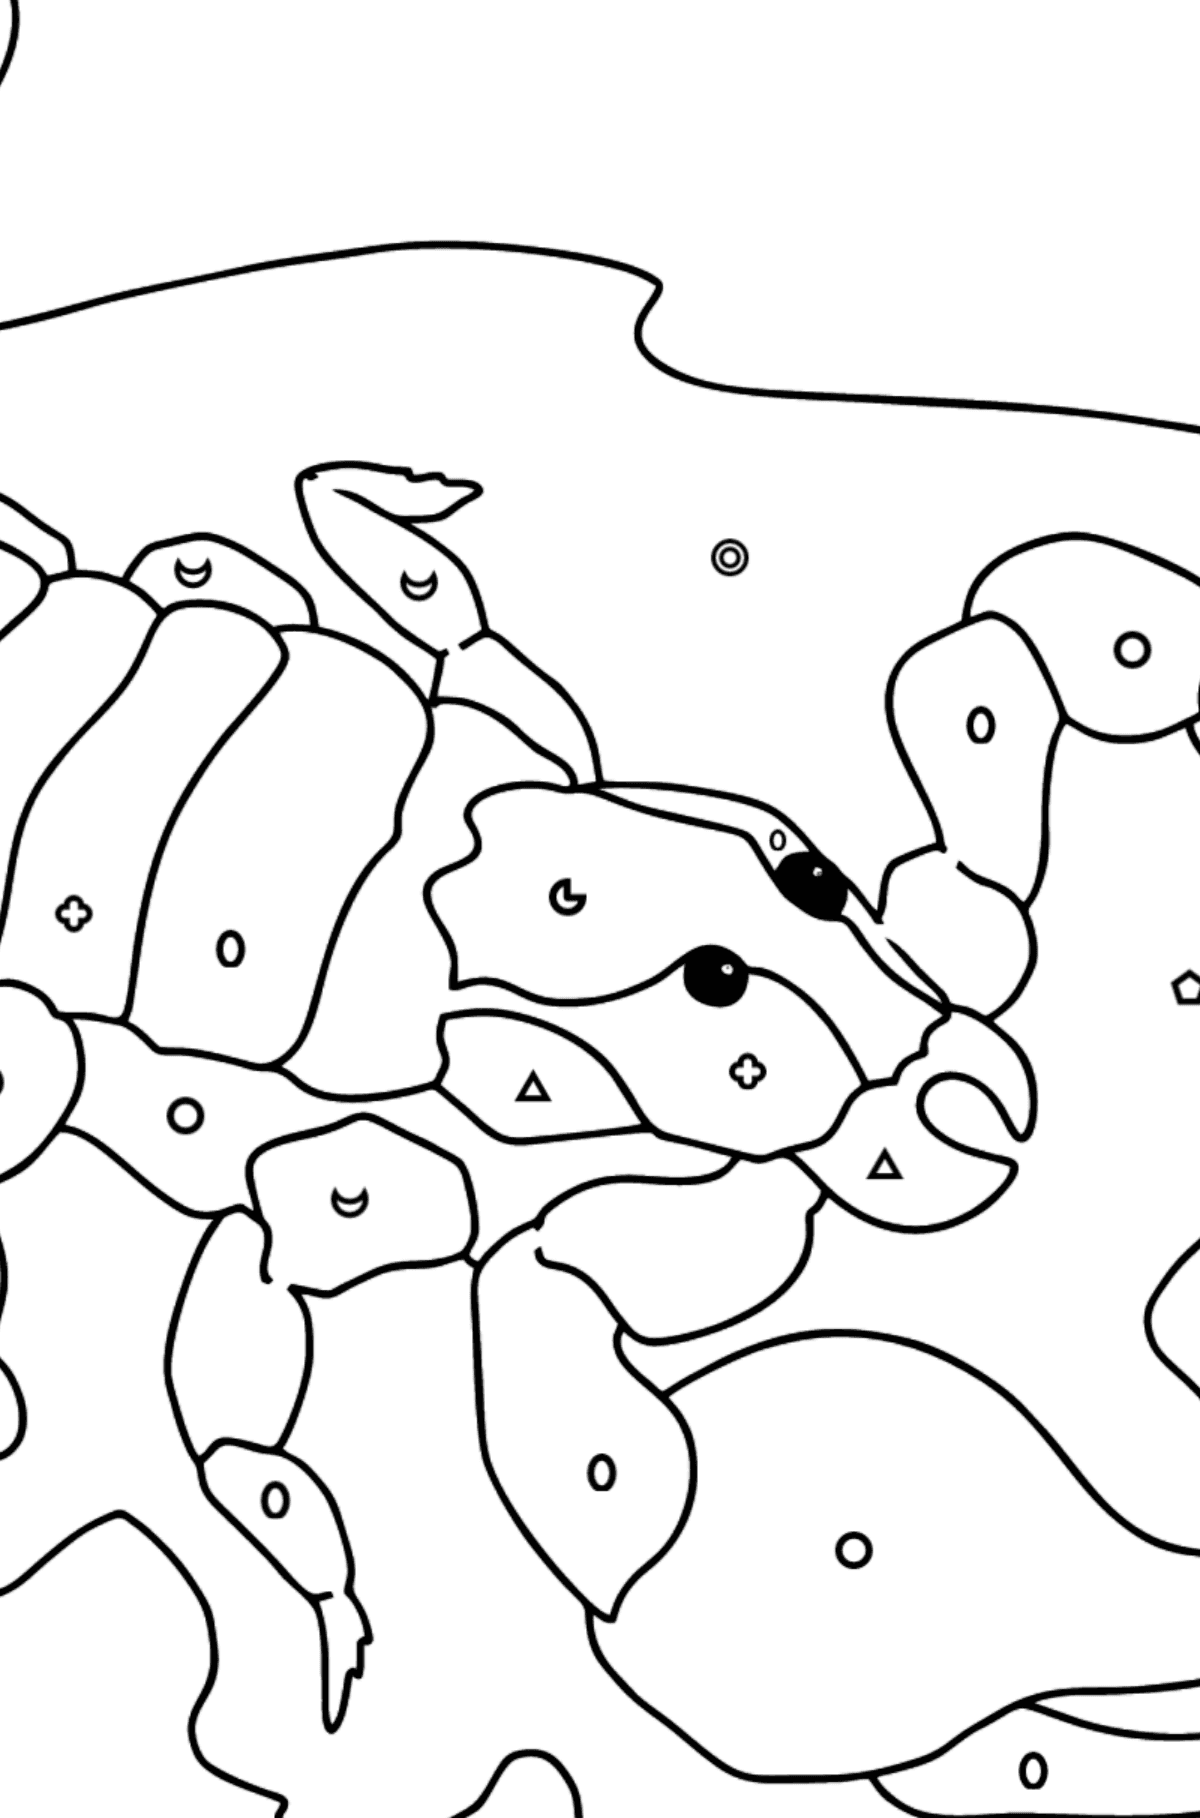 Tegning til farvning sort skorpion (vanskeligt) - Farvelægning af geometriske figurer for børn